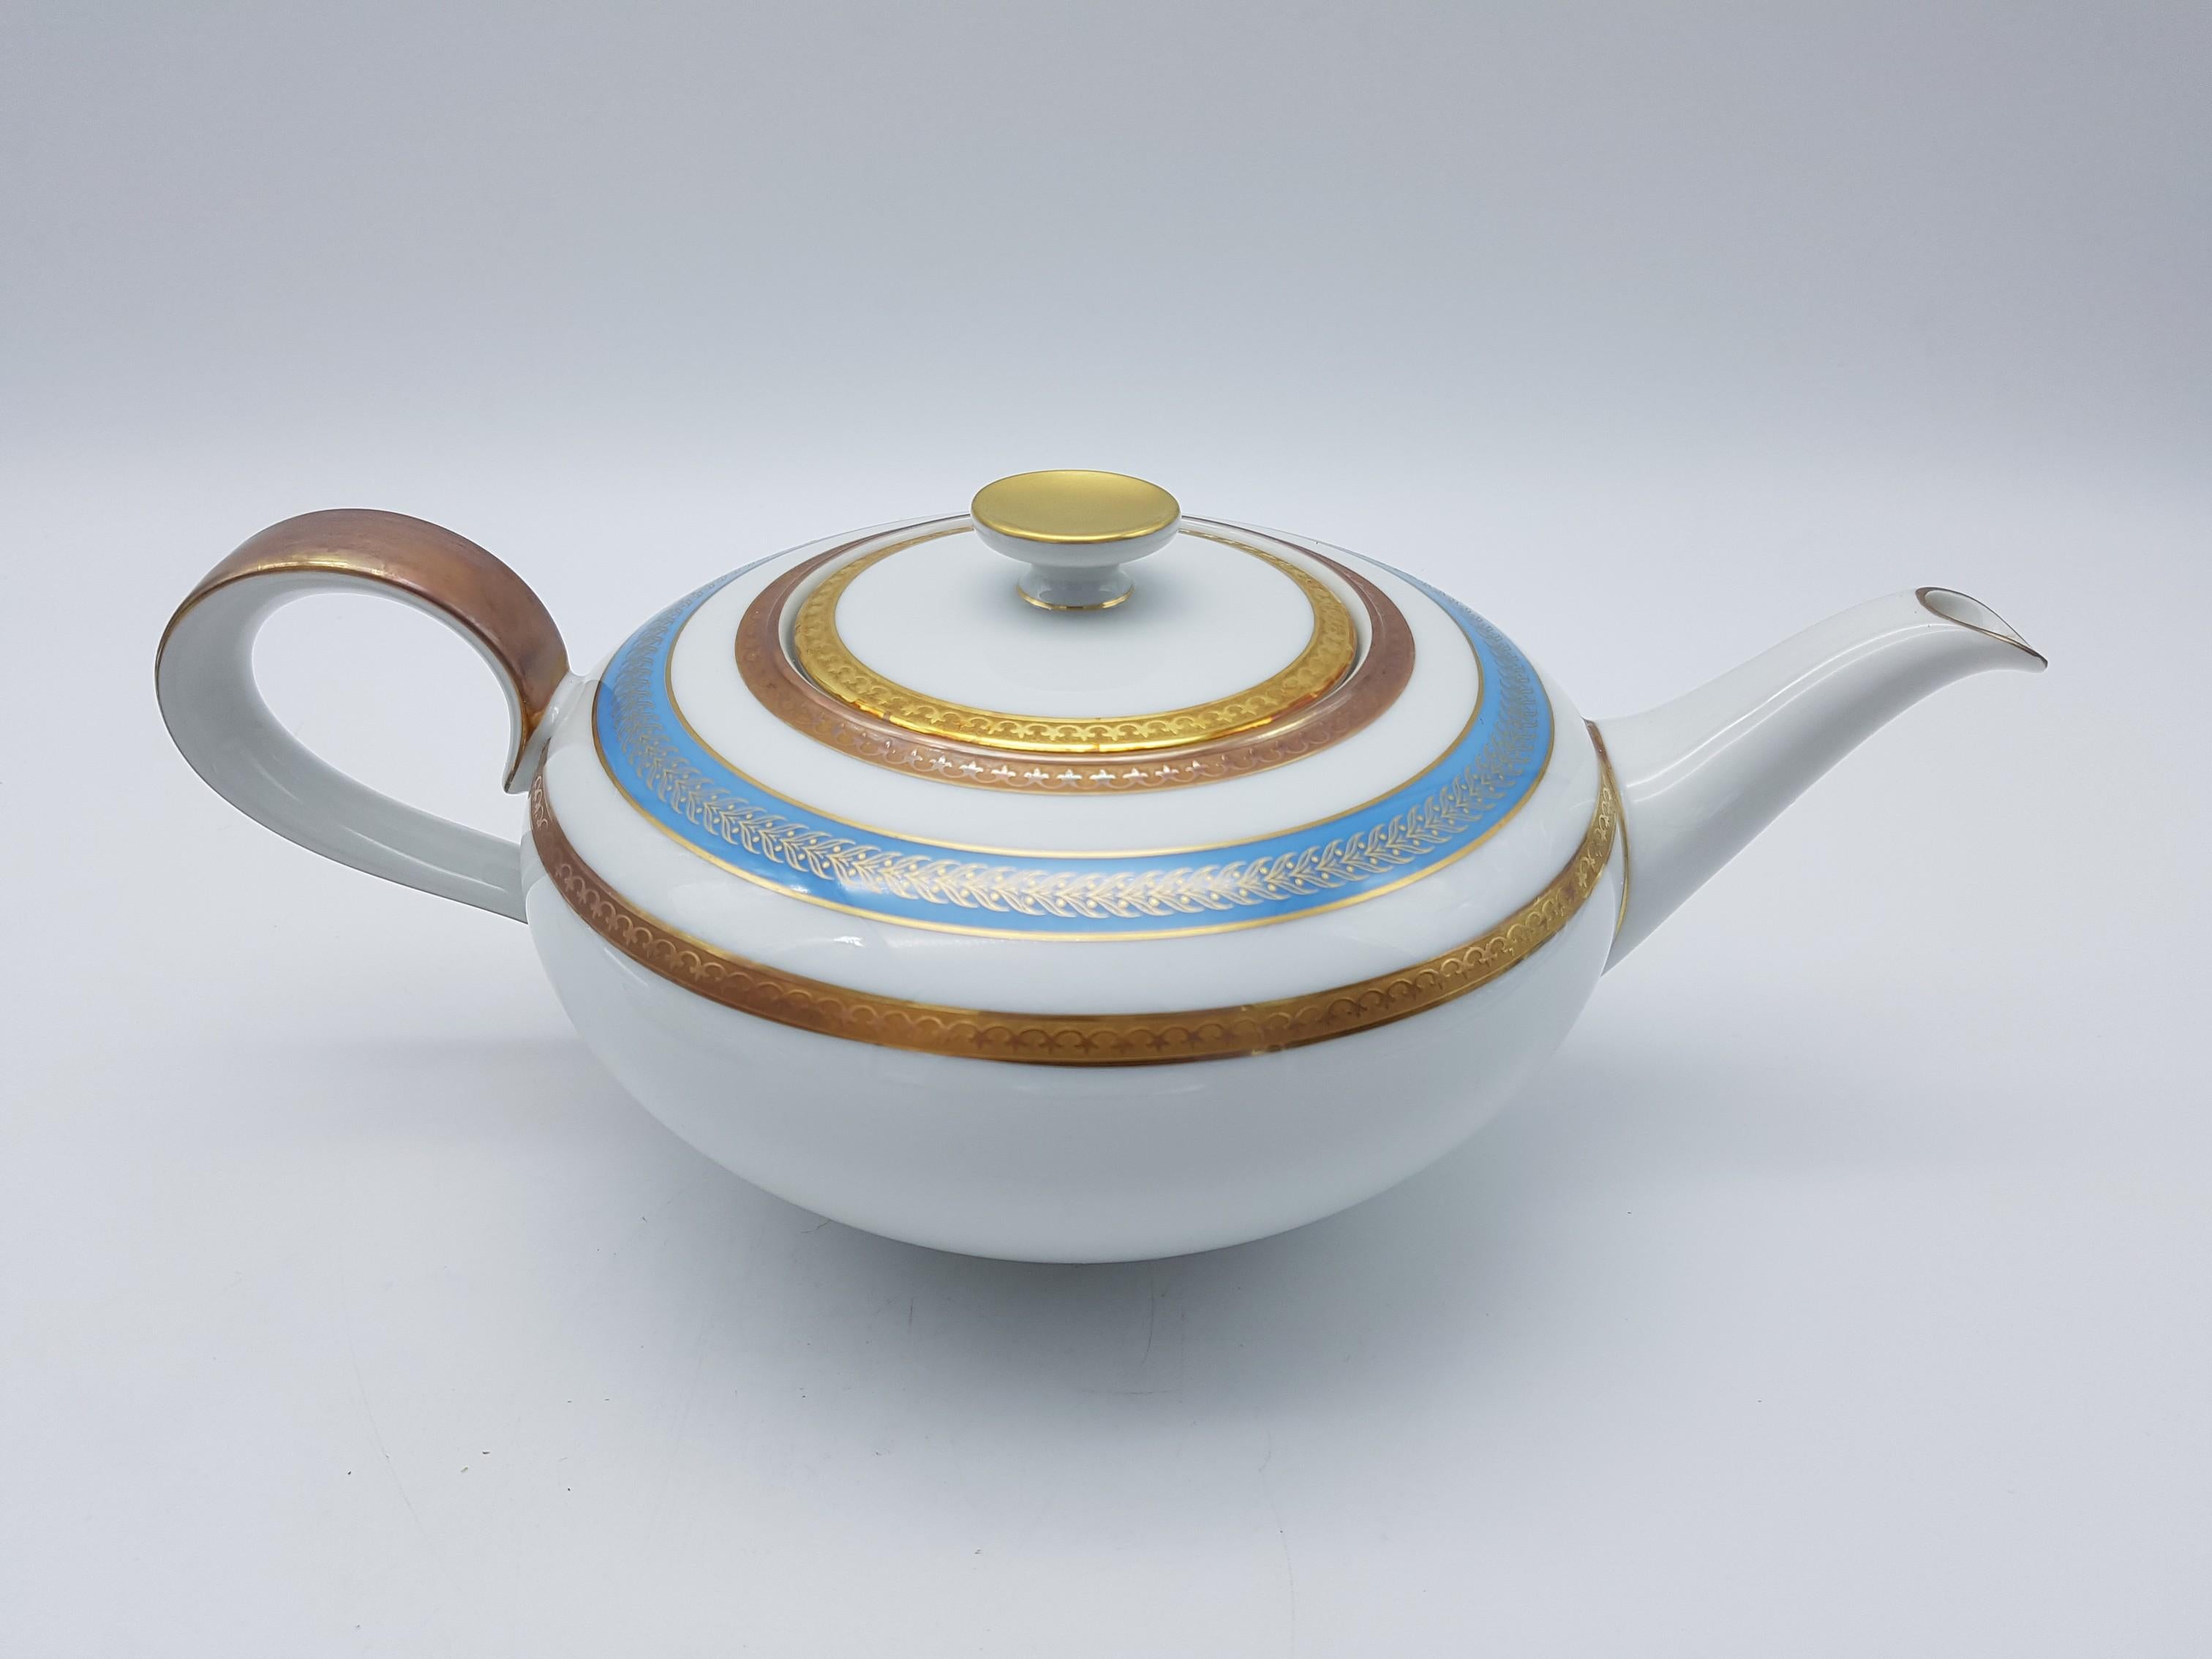 German Heinrich Bavaria Porcelain Tea-Set, 14-Piece Gold Rimmed Bone China Set For Sale